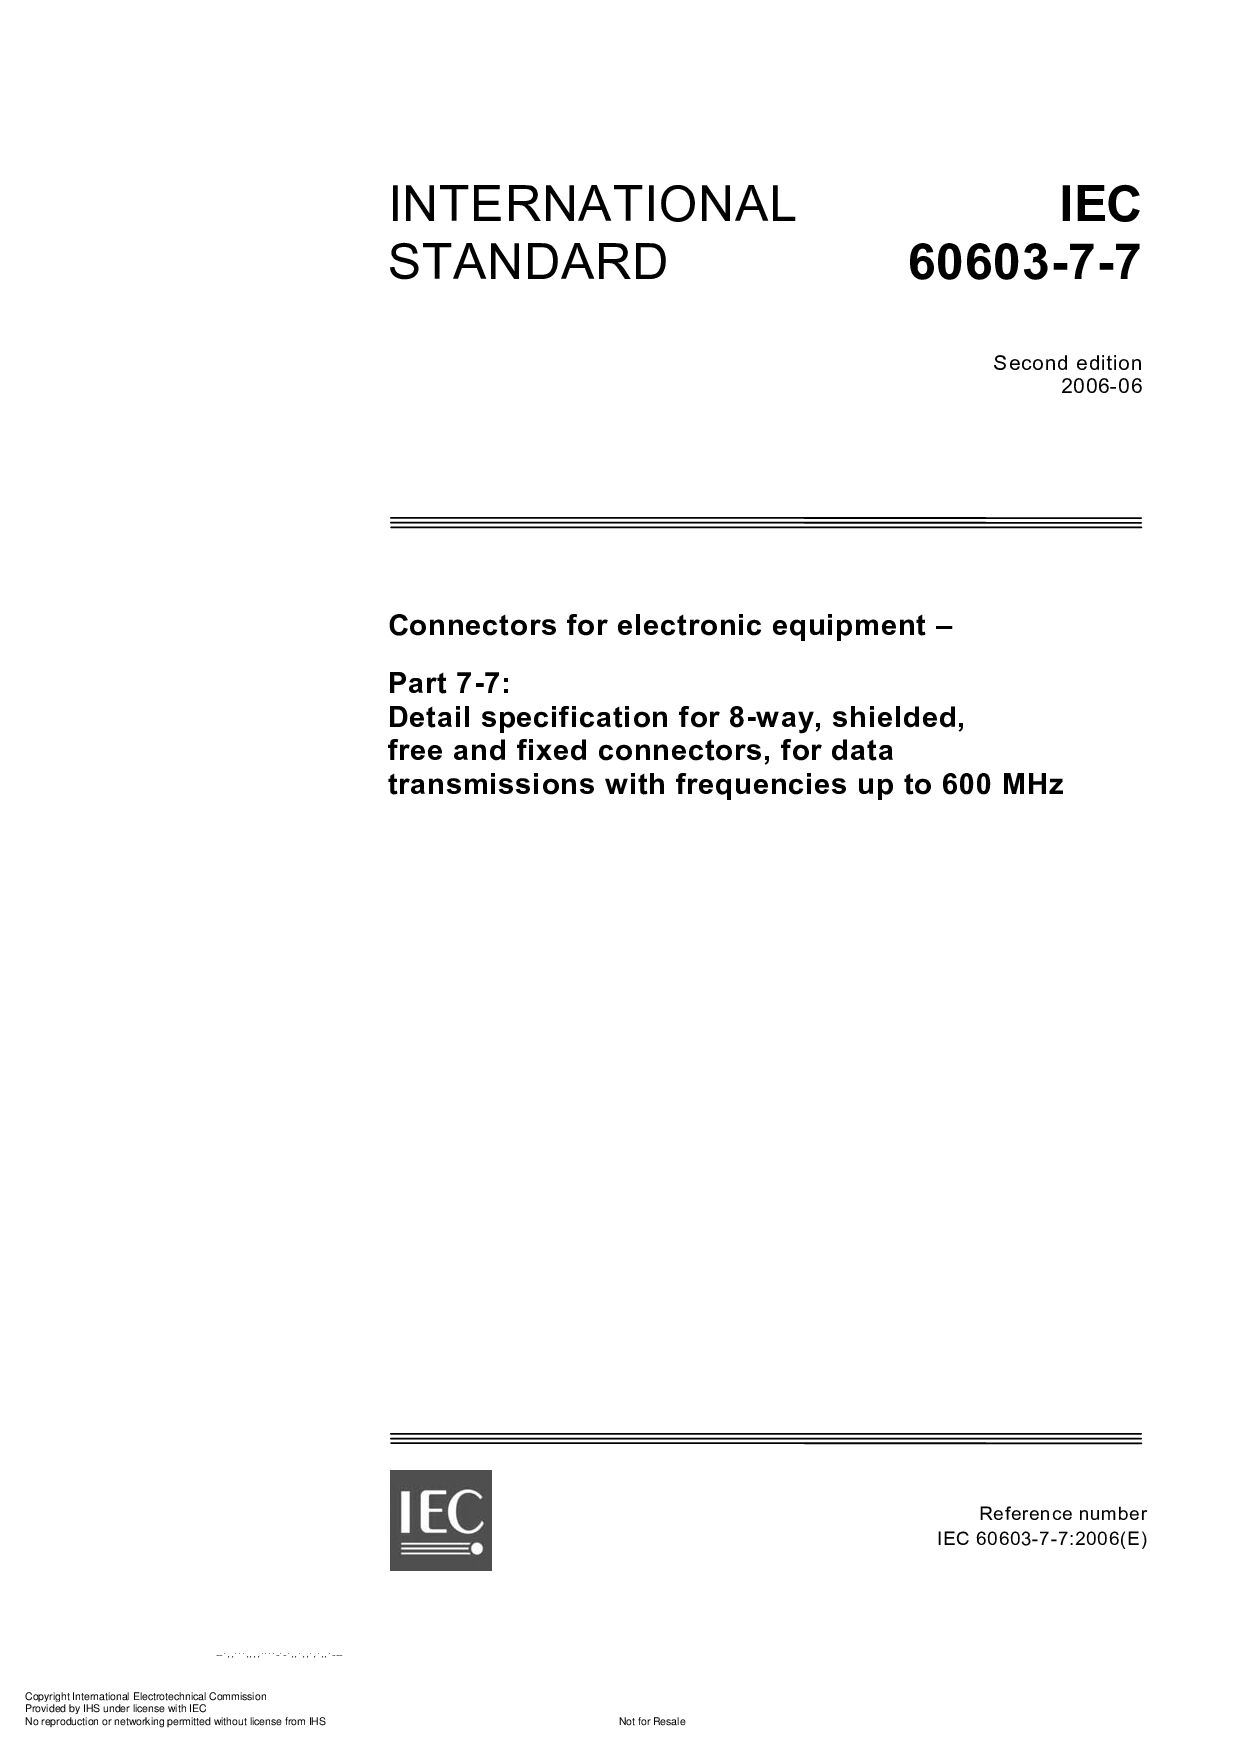 IEC 60603-7-7:2006封面图